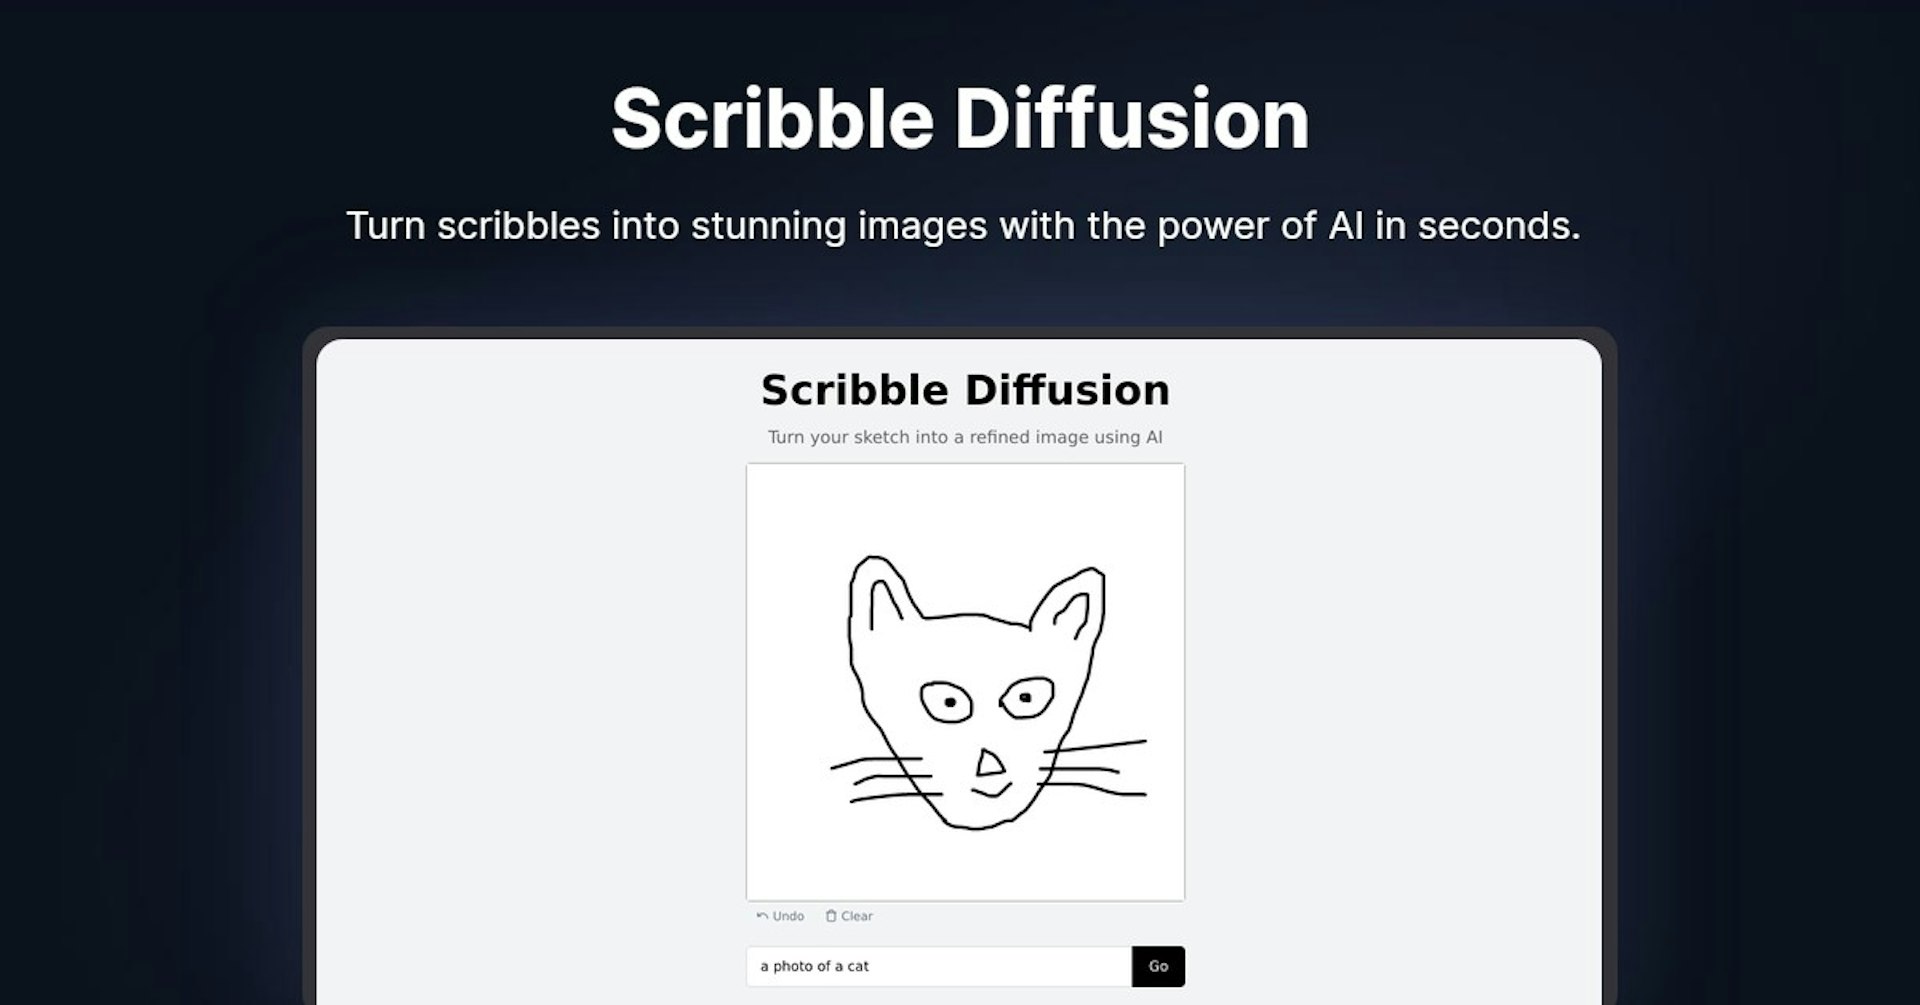 Scribble Diffusion